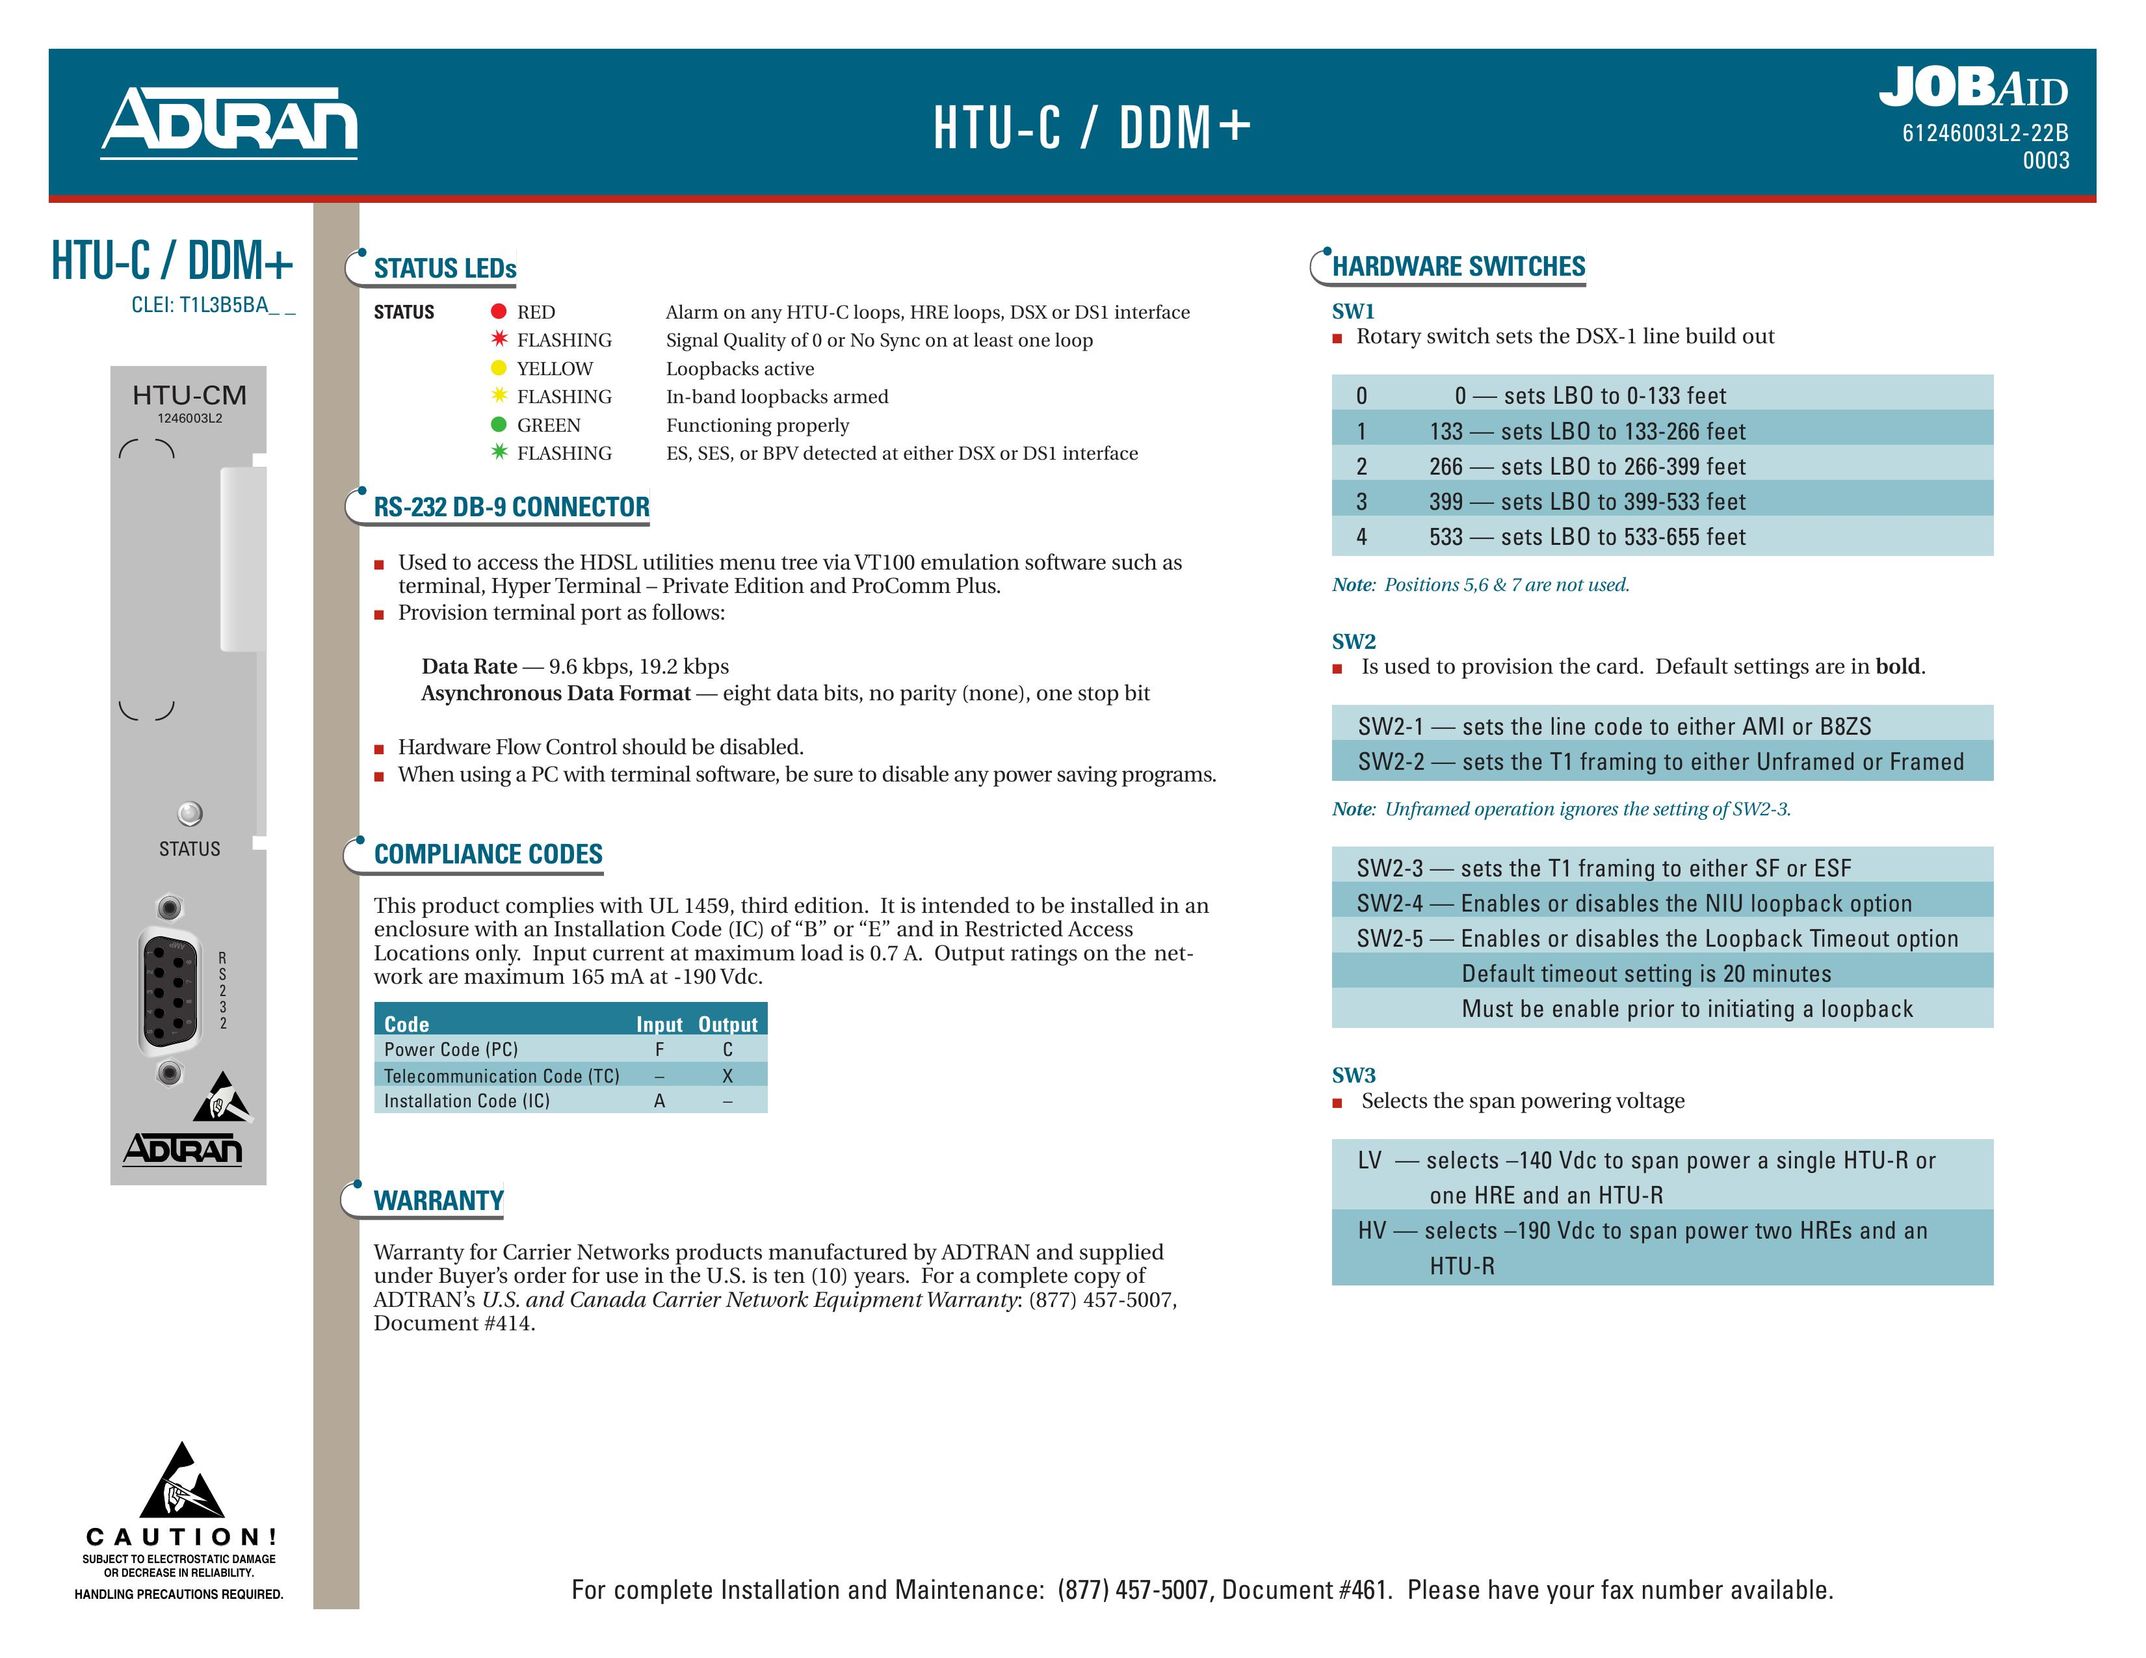 ADTRAN HDSL HTU-C/DDM+ Switch User Manual